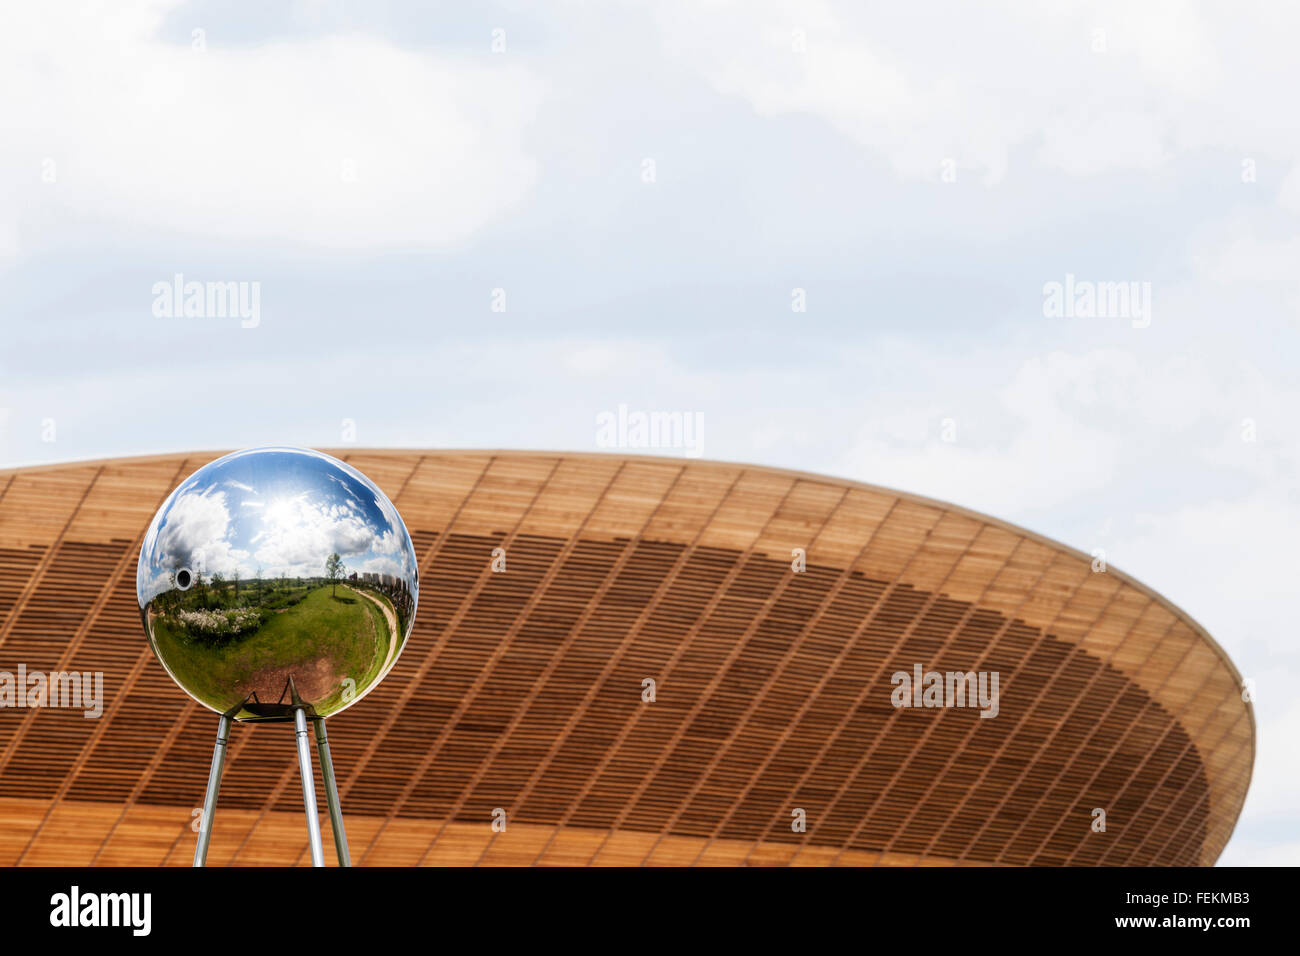 Une sphère réfléchissante sculpture avec le vélodrome en arrière-plan, le Parc Olympique, Stratford, London, E15. Banque D'Images